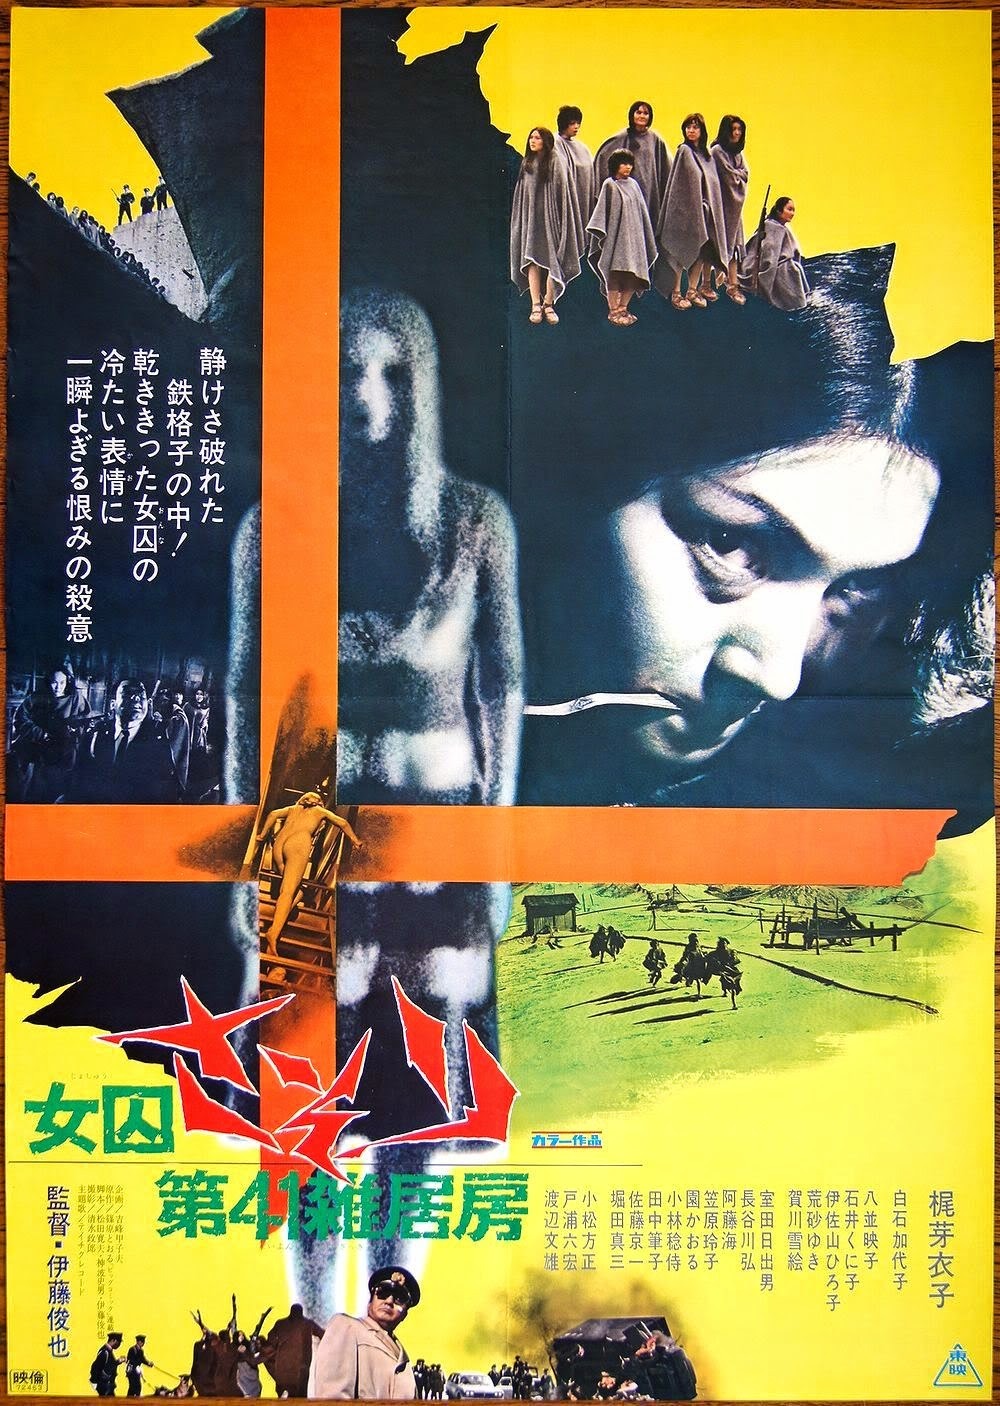 Extra Large Movie Poster Image for Joshû sasori: Dai-41 zakkyo-bô (#1 of 2)